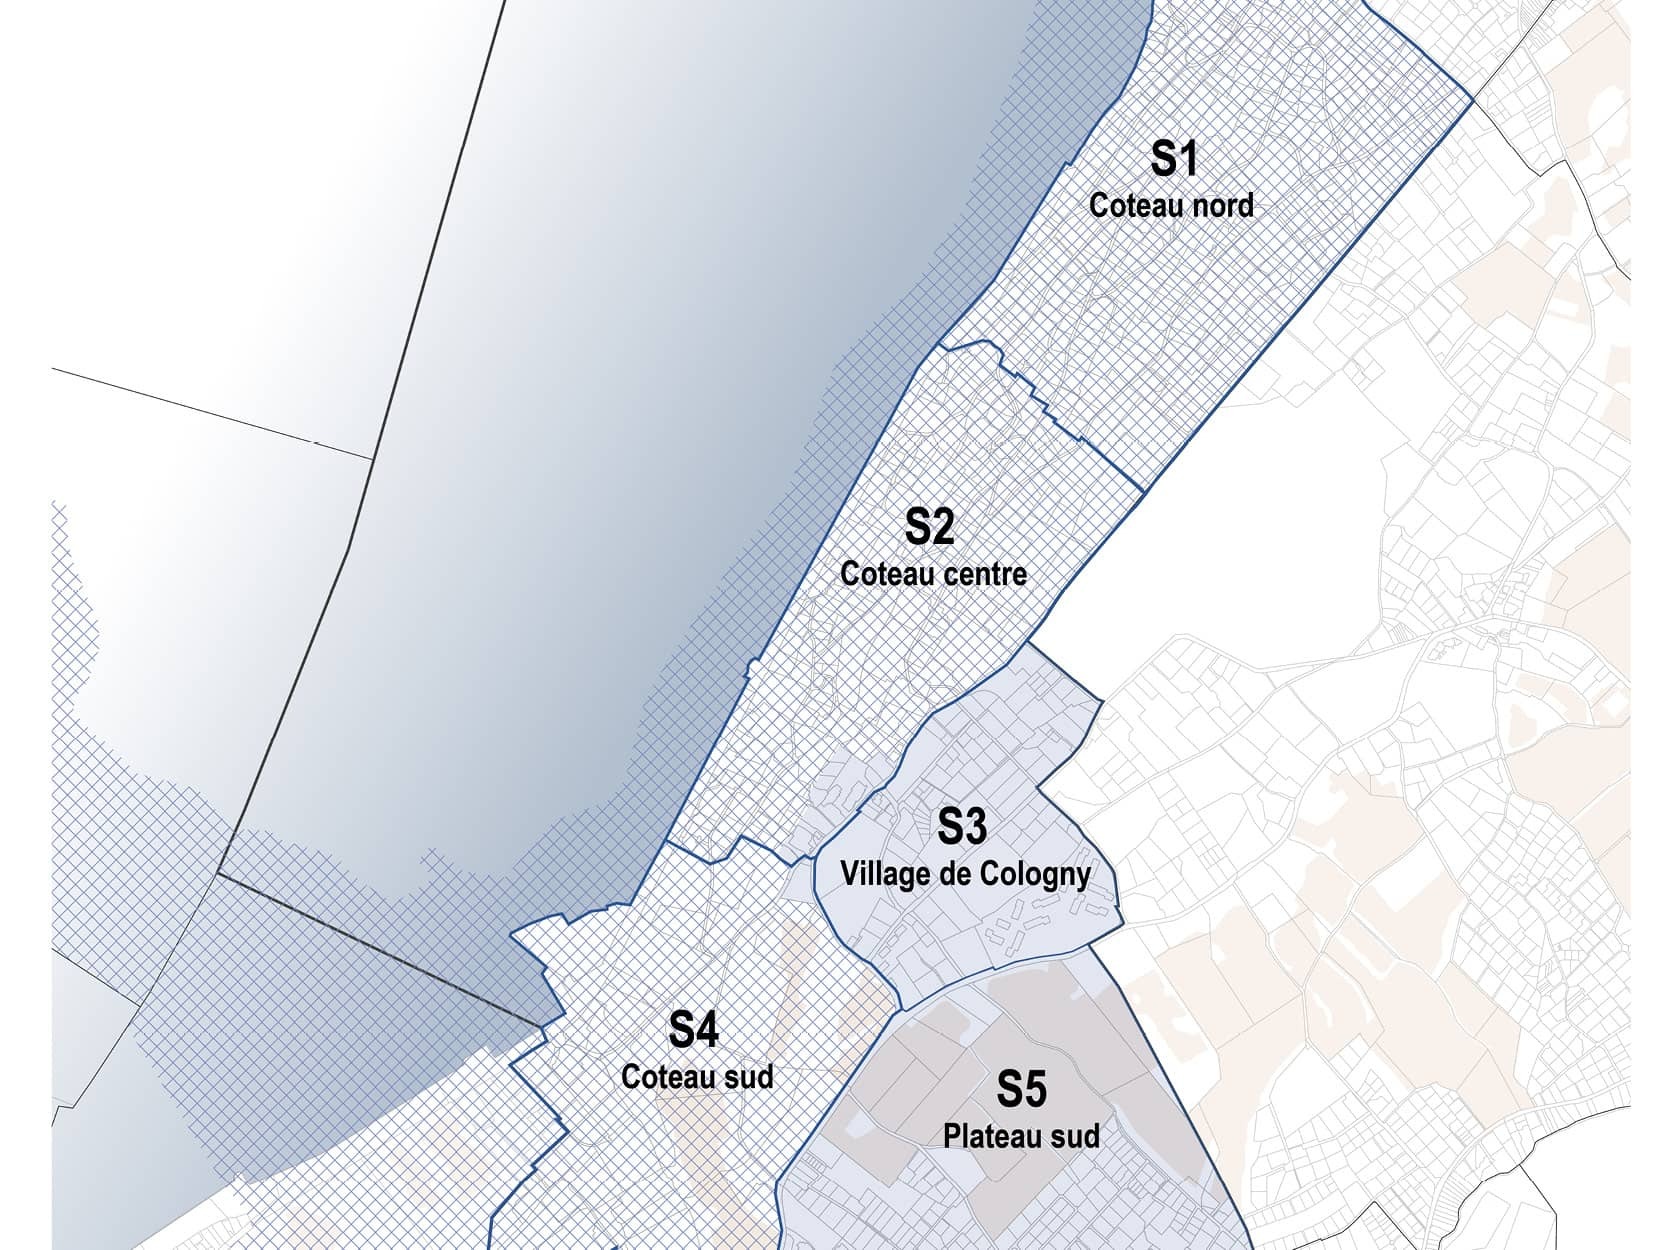 Les différentes zones définies par le Plan directeur communal de Cologny